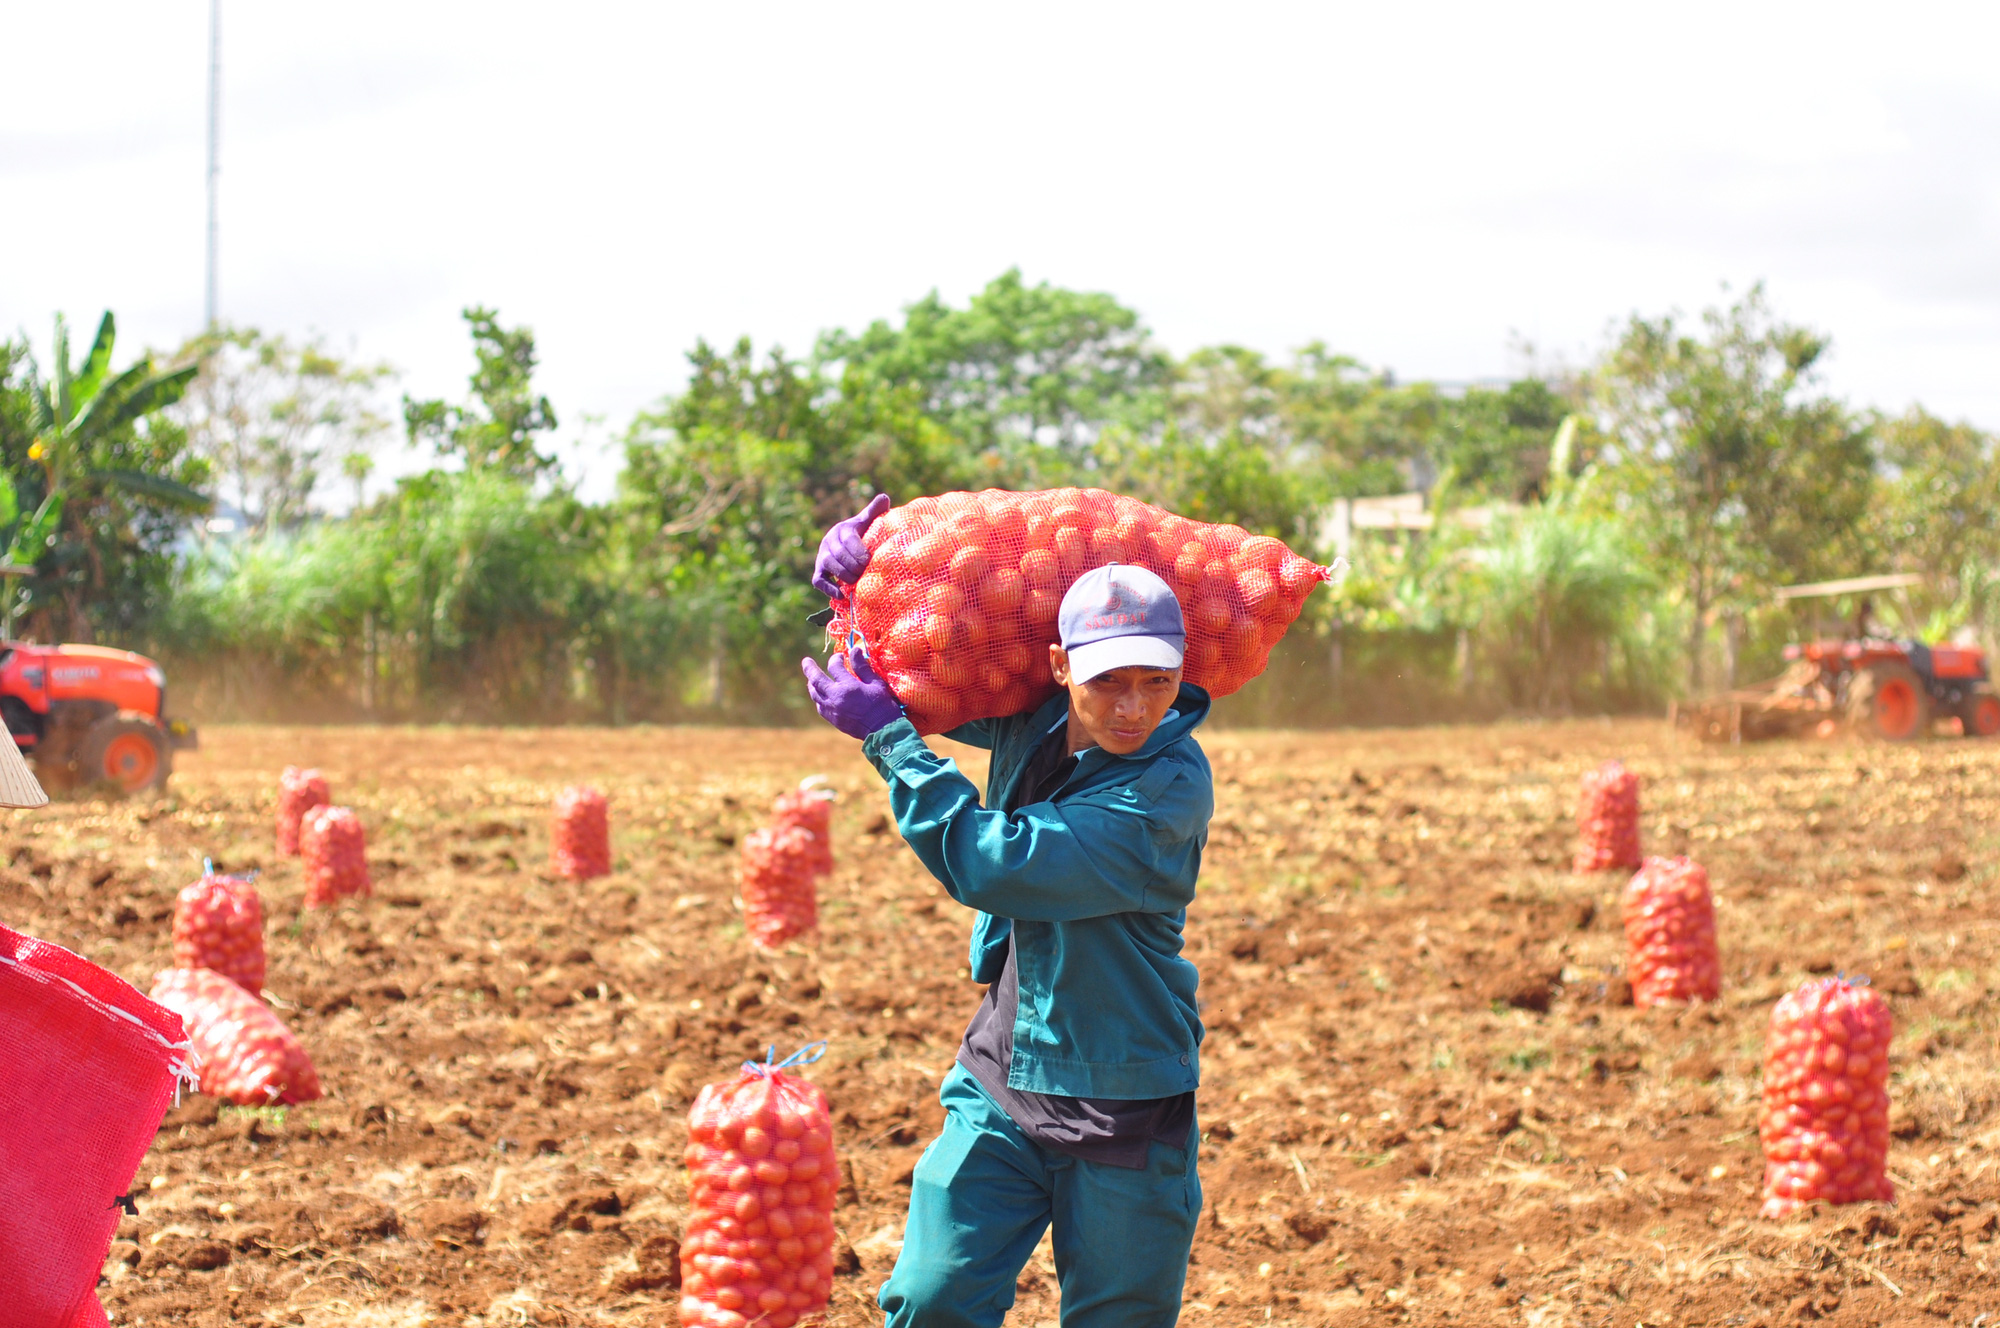 Liên kết trồng khoai tây, nông dân được ứng trước phân, giống vẫn lãi 170 triệu đồng/ha - Ảnh 3.